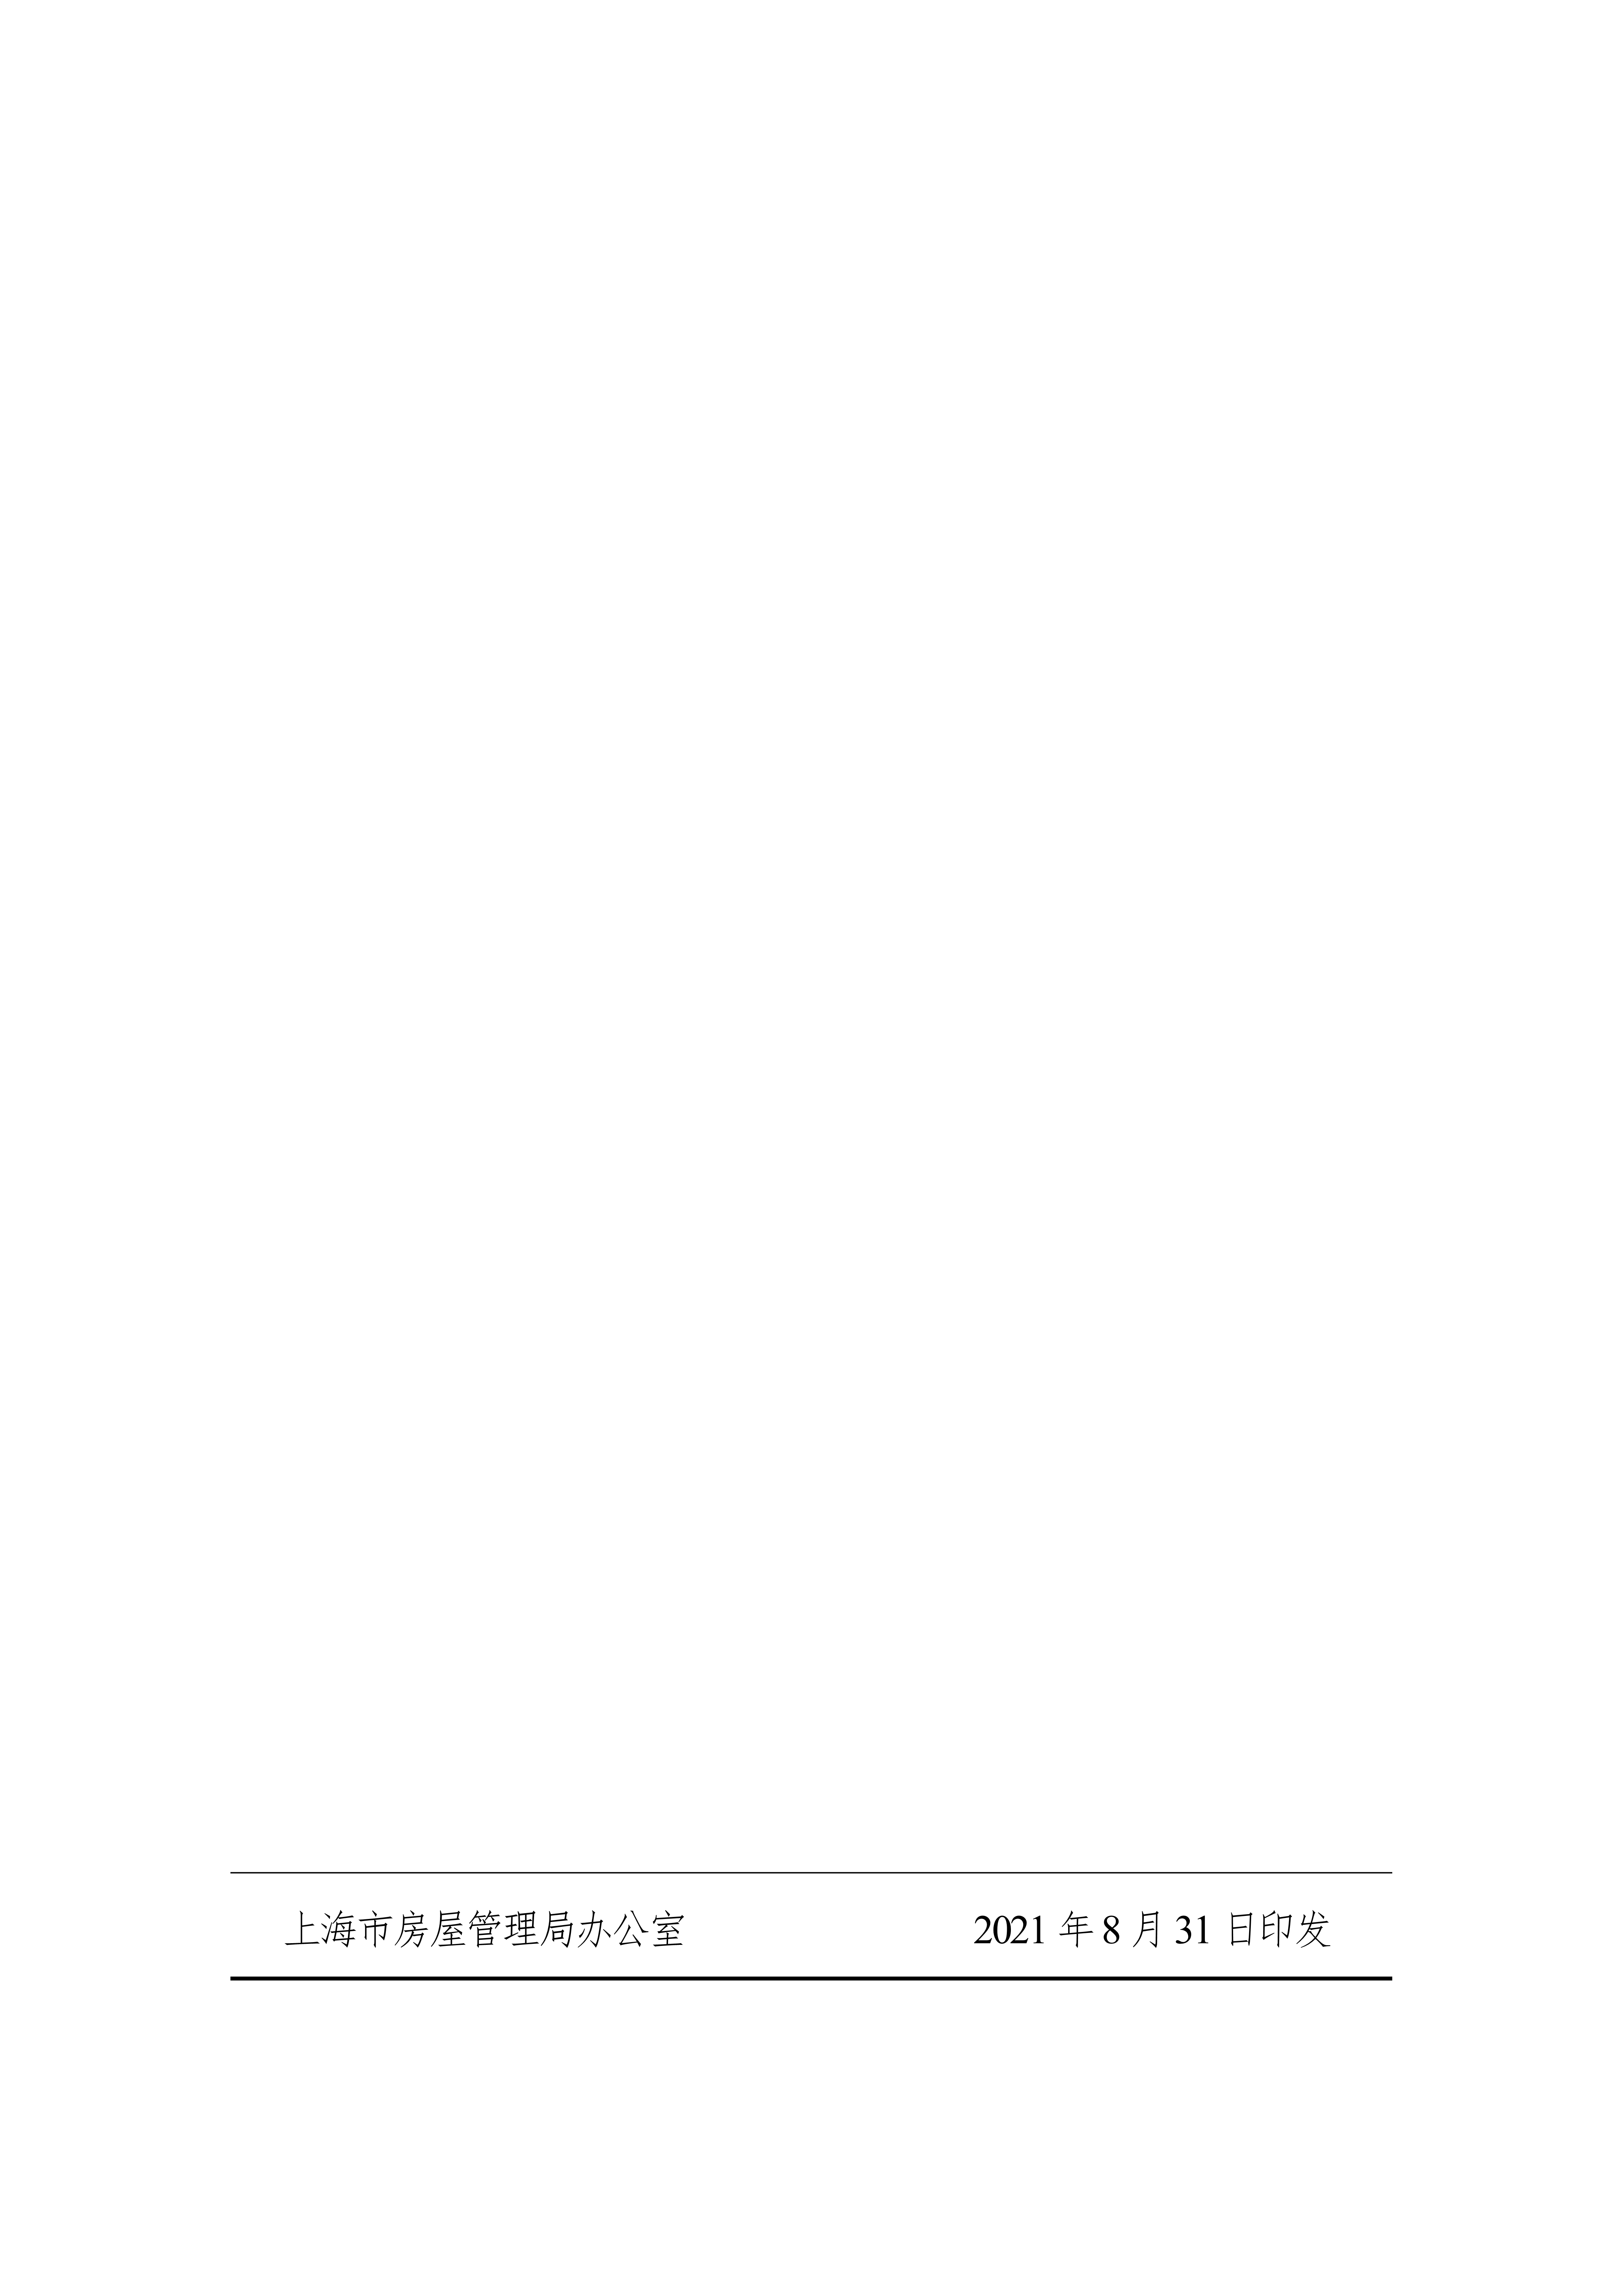 关于印发《上海市住宅物业管理区域机动车停放管理规定》的通知（沪房规范〔2021〕11 号）(1)_8.jpg